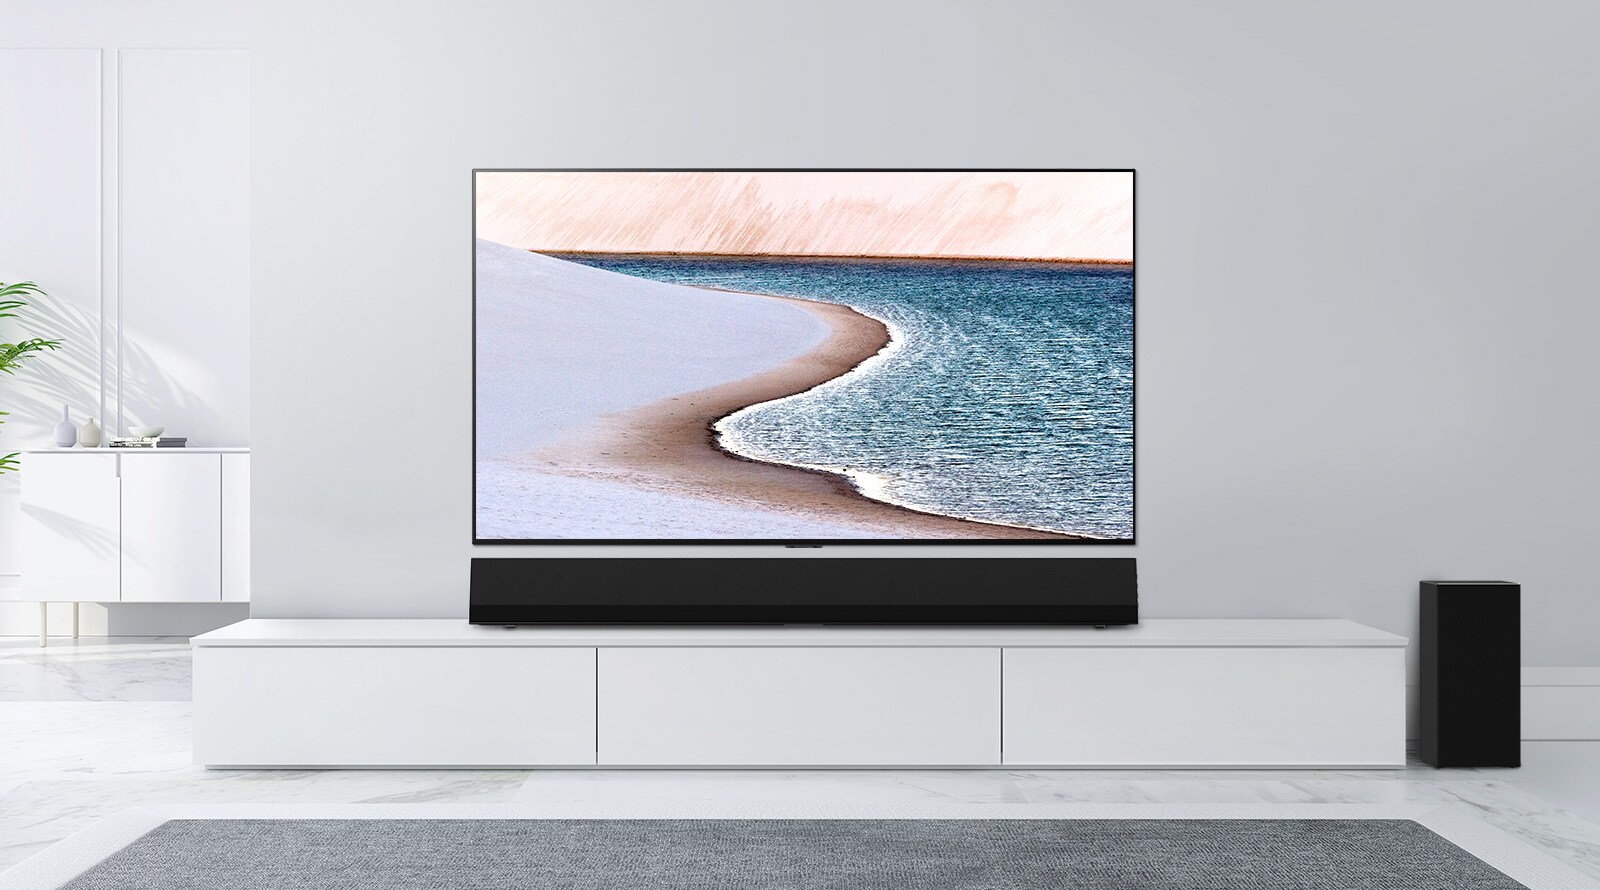 Μια τηλεόραση στερεωμένη σε έναν τοίχο ανοιχτού γκρίζου χρώματος. Το LG Soundbar βρίσκεται από κάτω, επάνω σε ένα λευκό ερμάριο. Η τηλεόραση δείχνει μια παραλία.